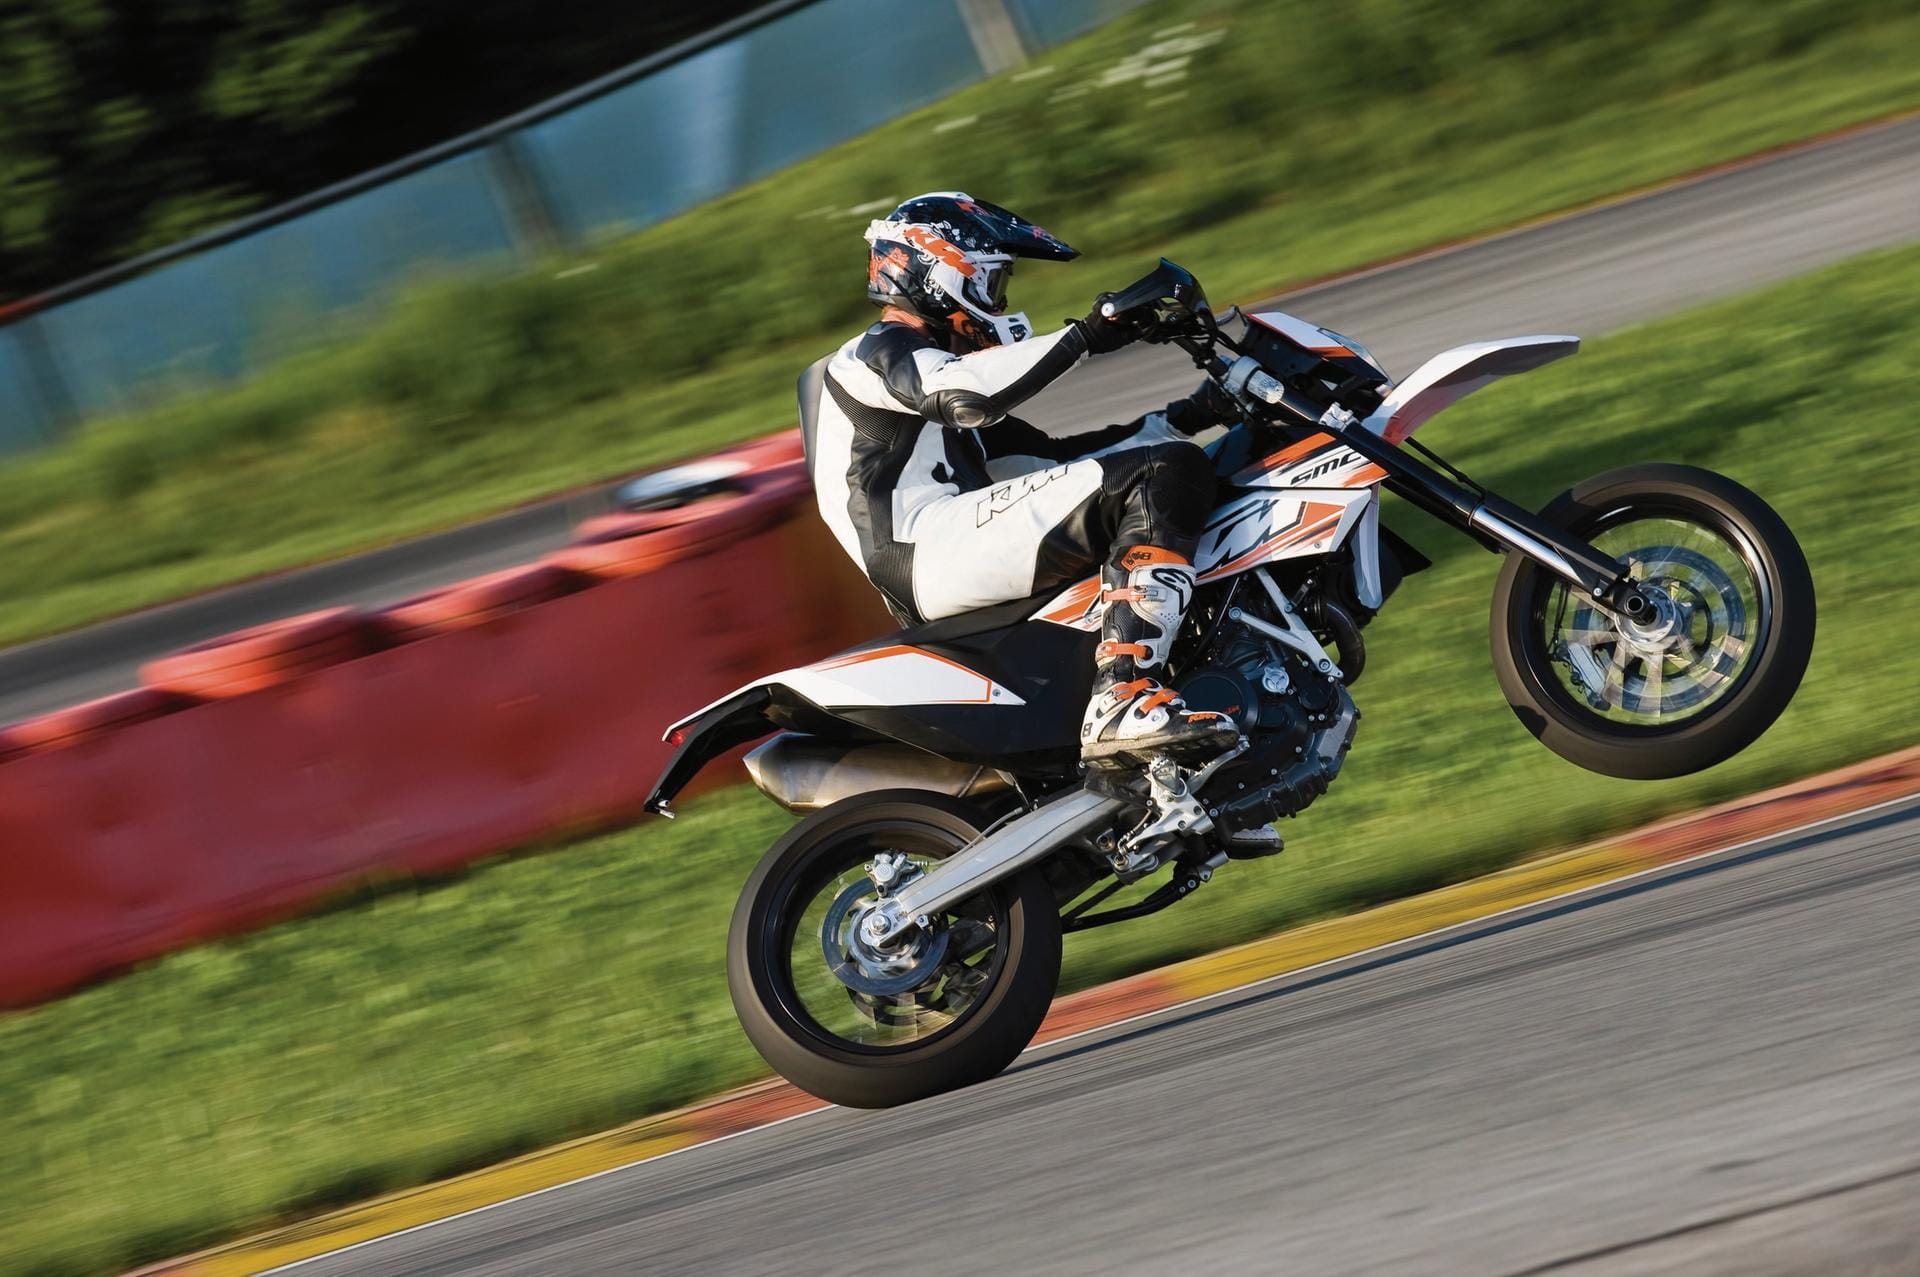 Supermoto: leichte, spartanische Motorräder wie die KTM 690 SMC.